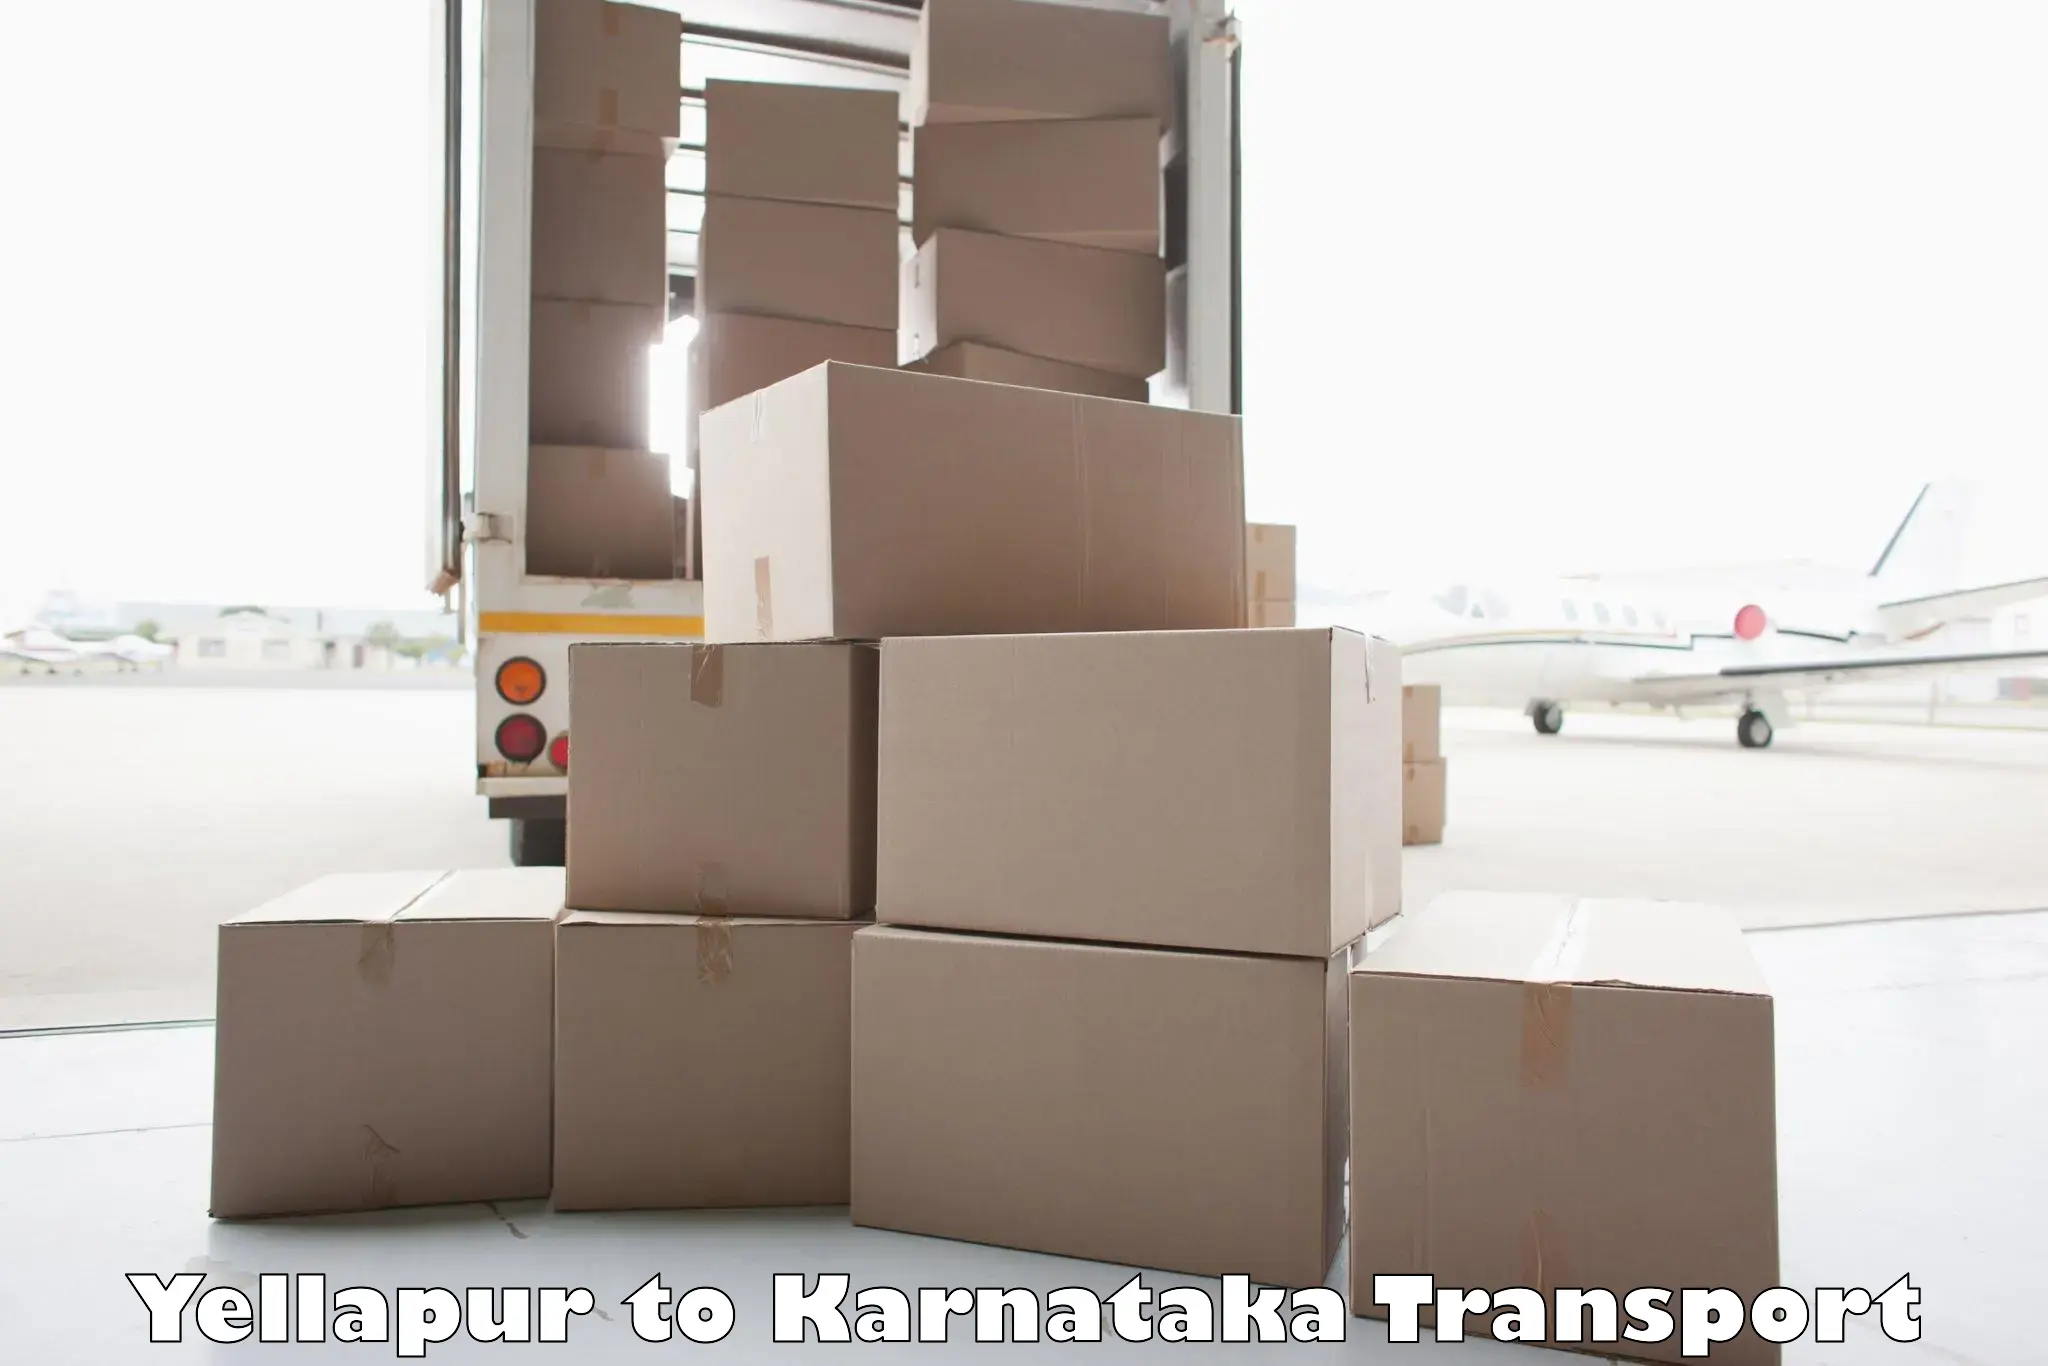 Express transport services Yellapur to Karnataka